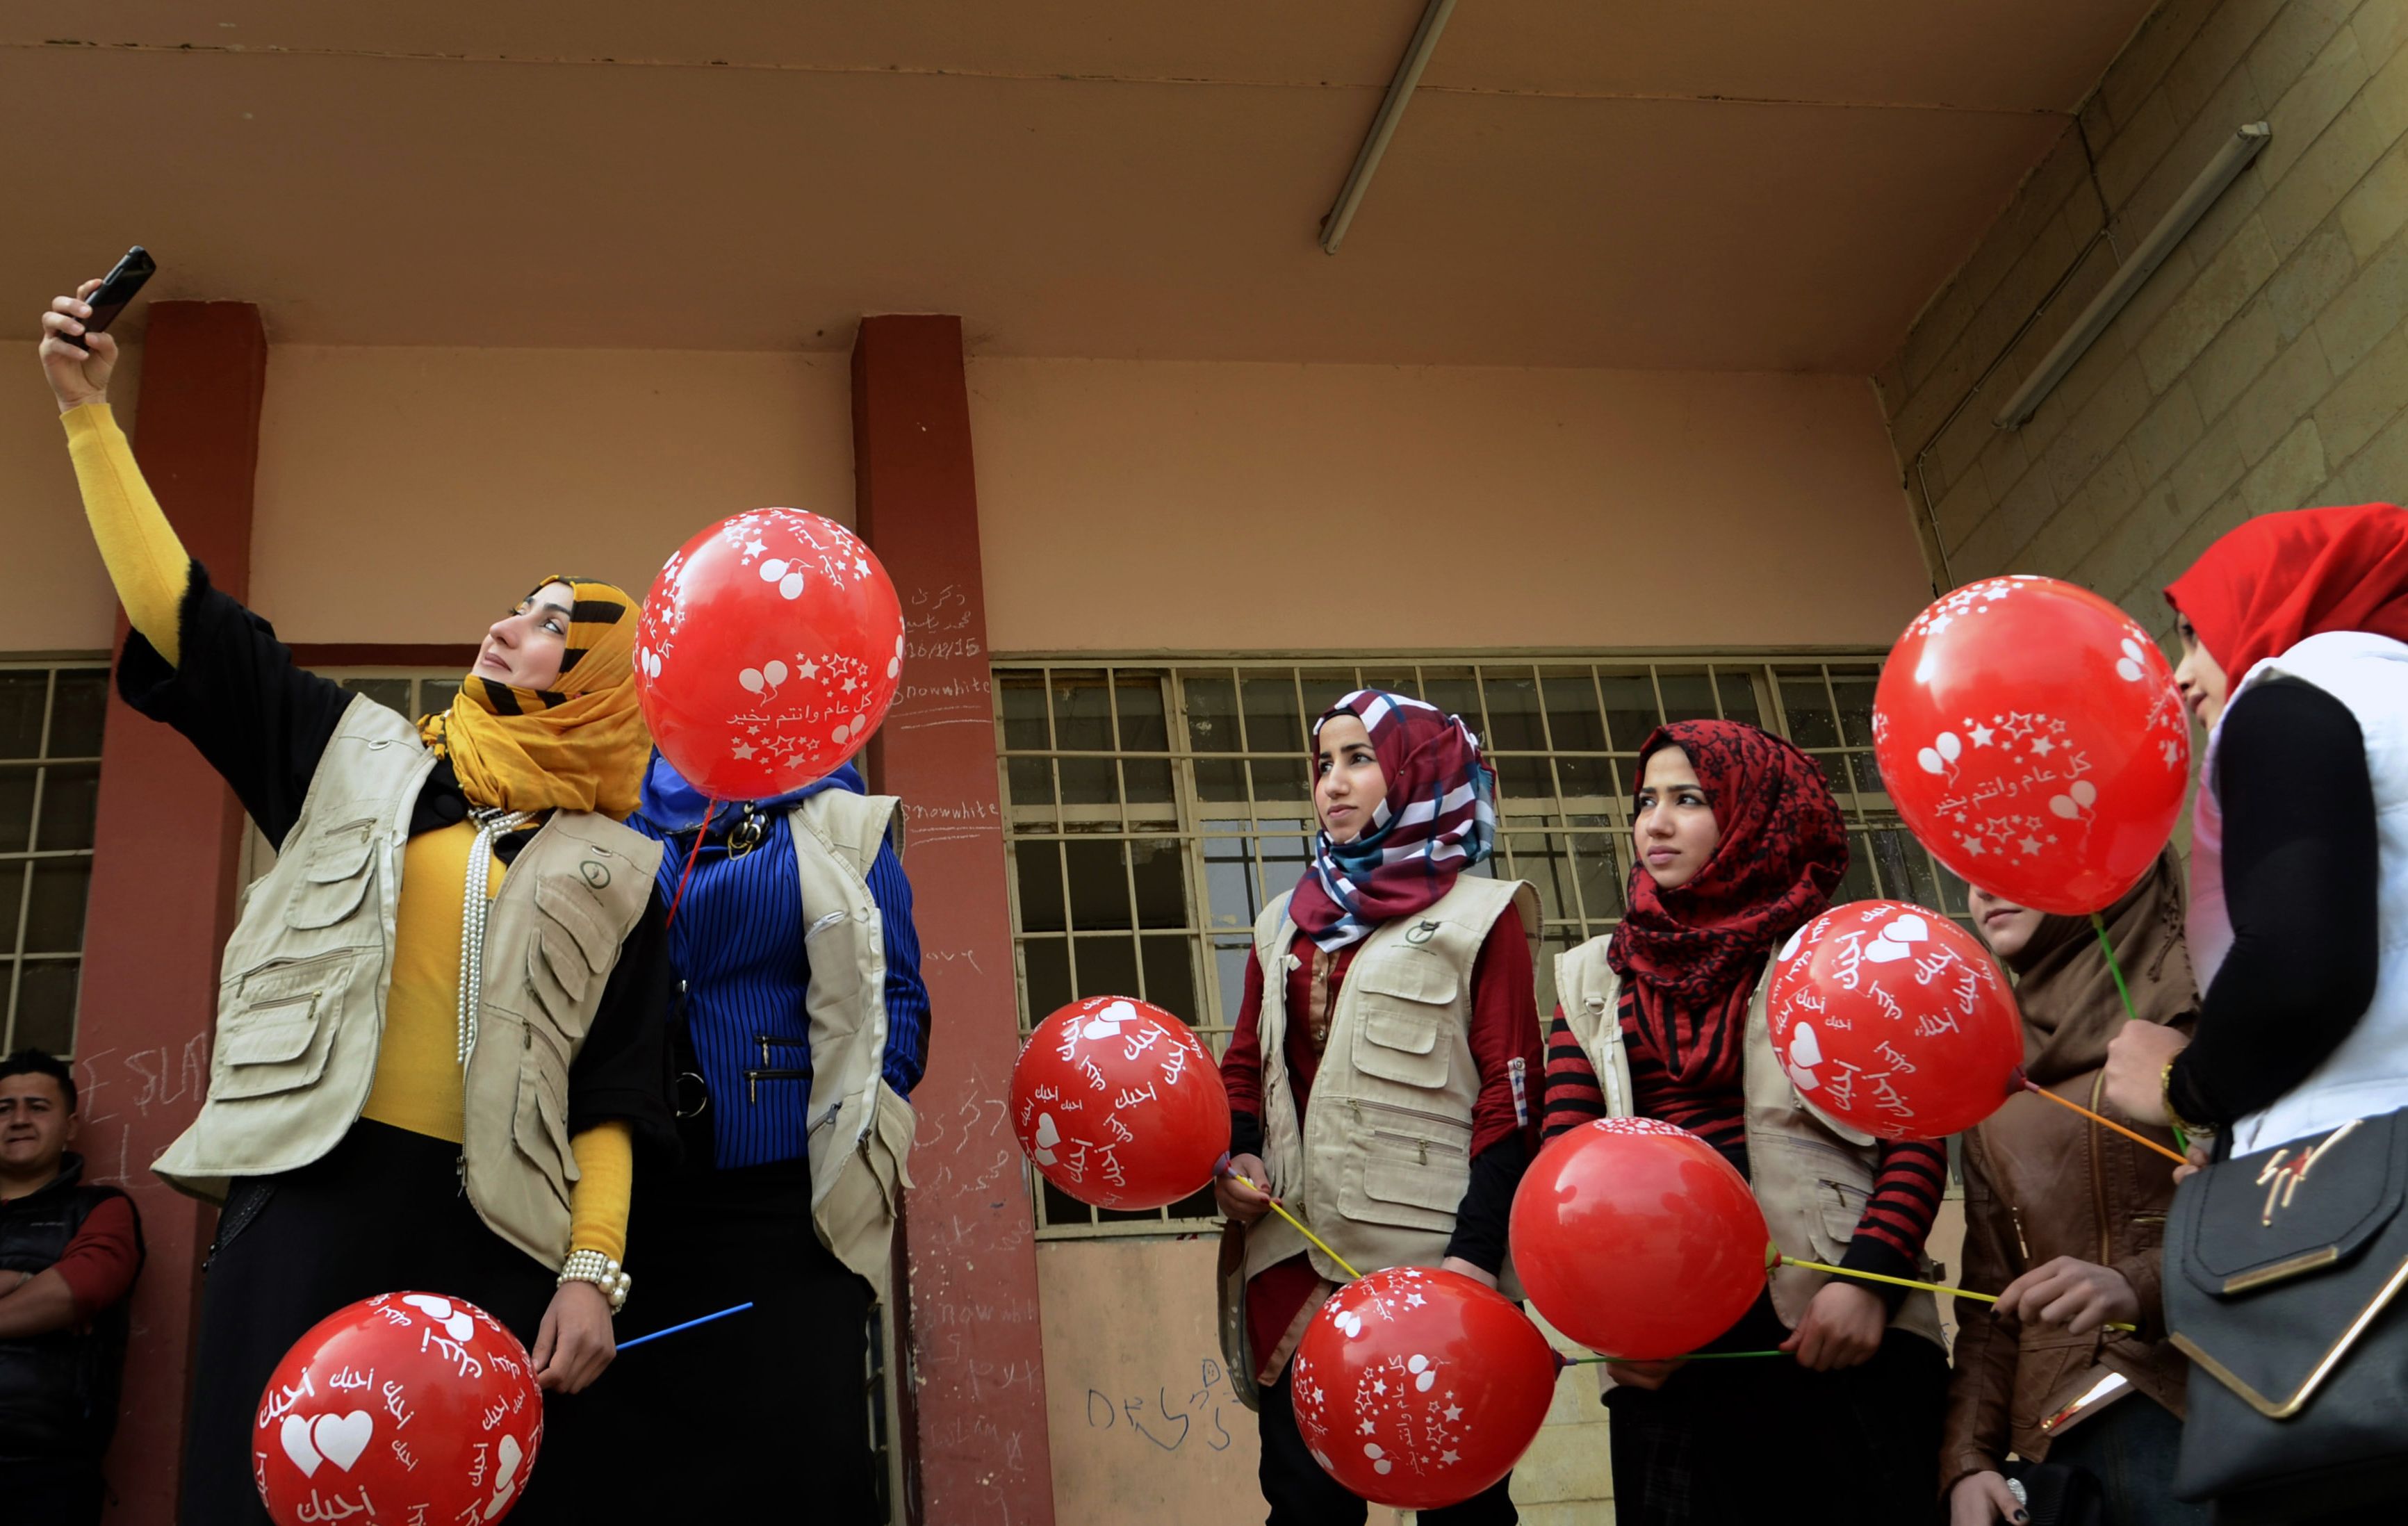 بالصور.. طلاب الموصل يحتفلون بـ"الفلانتين" على طريقتهم الخاصة